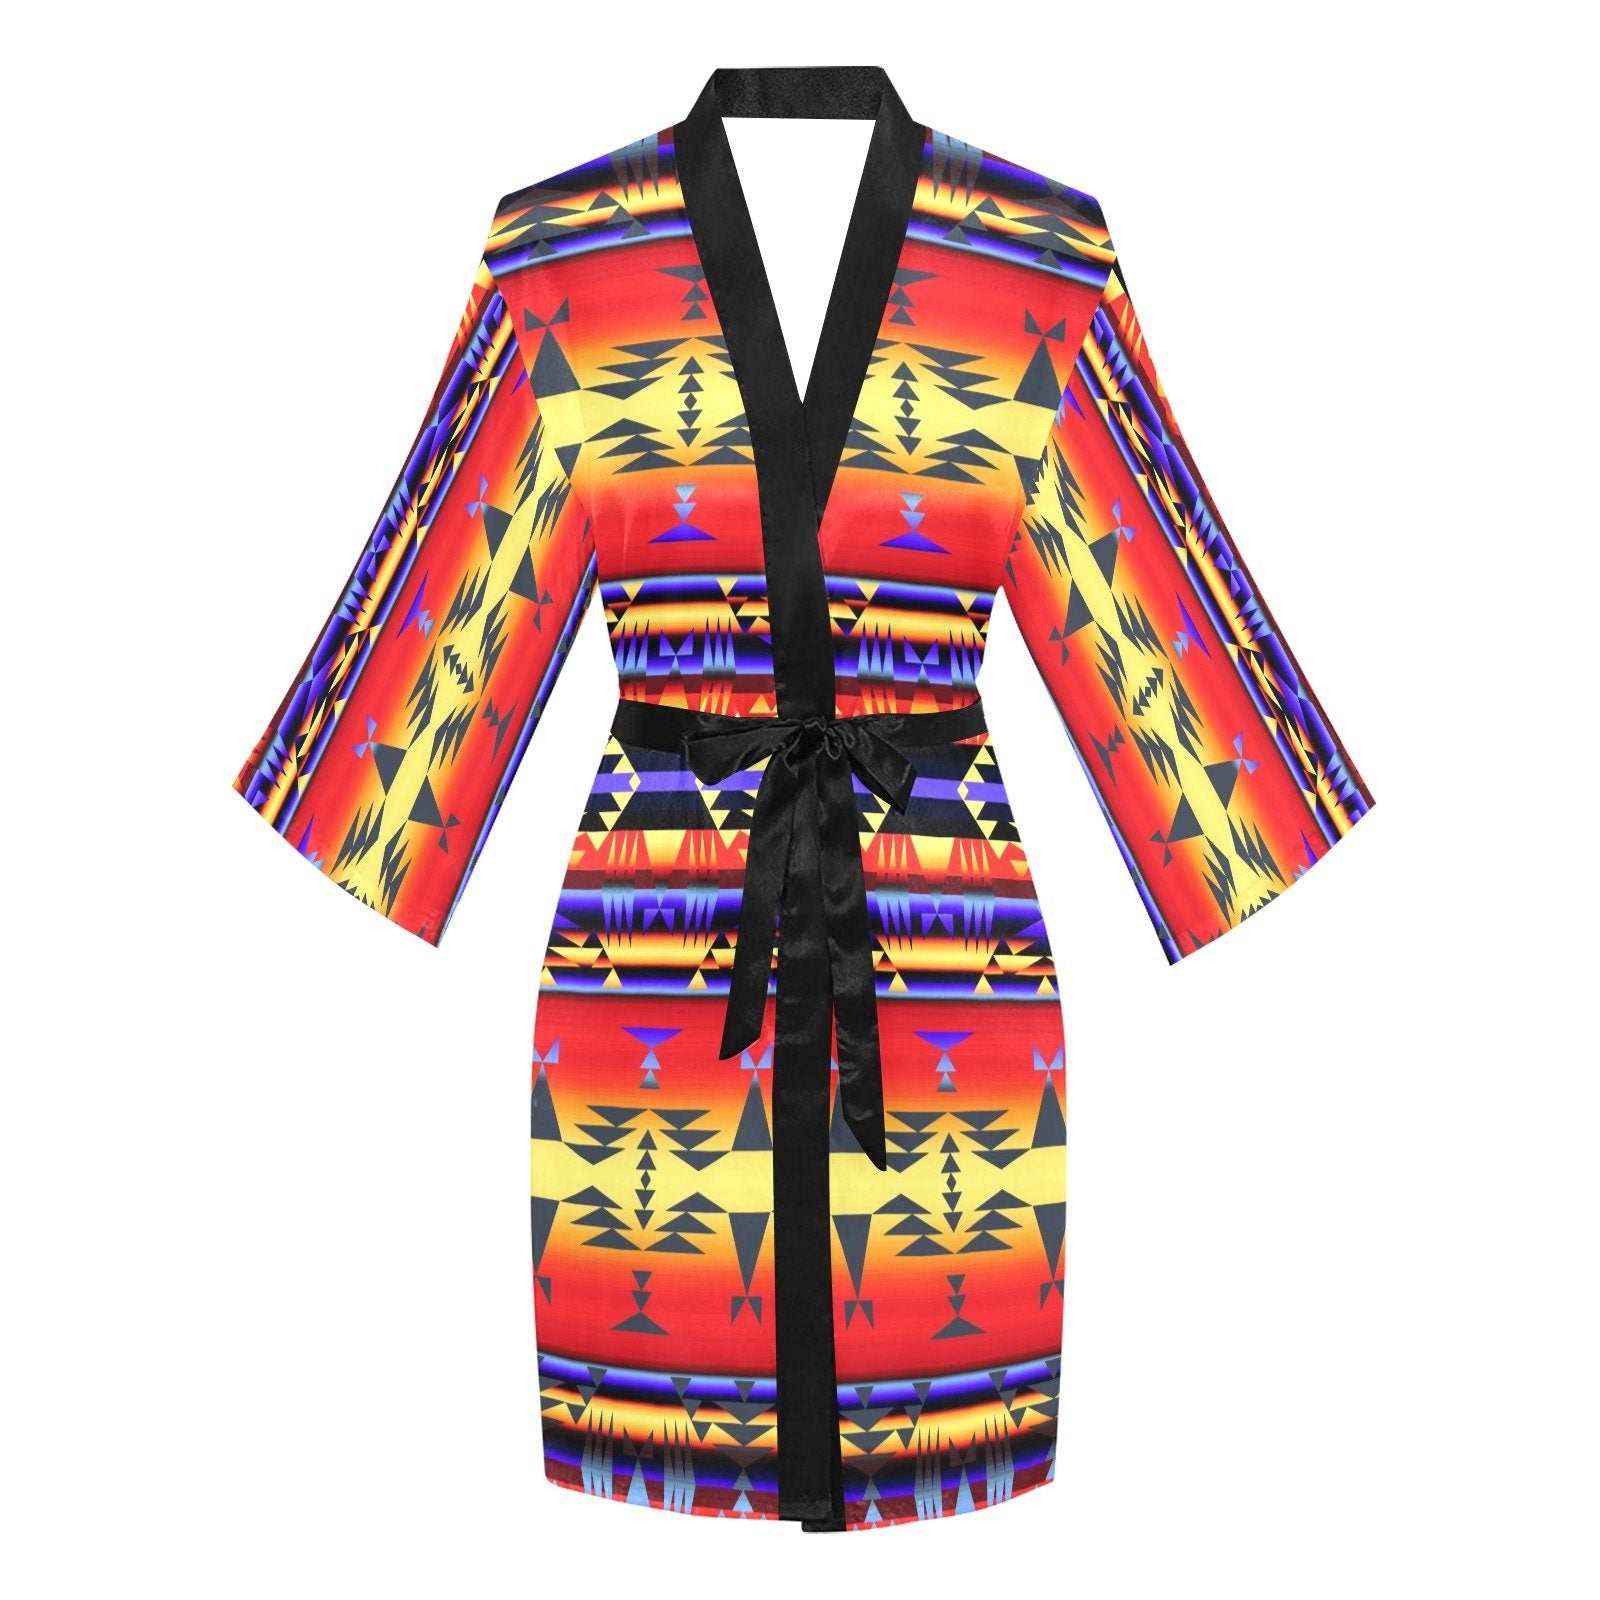 Between the San Juan Mountains Long Sleeve Kimono Robe Long Sleeve Kimono Robe e-joyer 